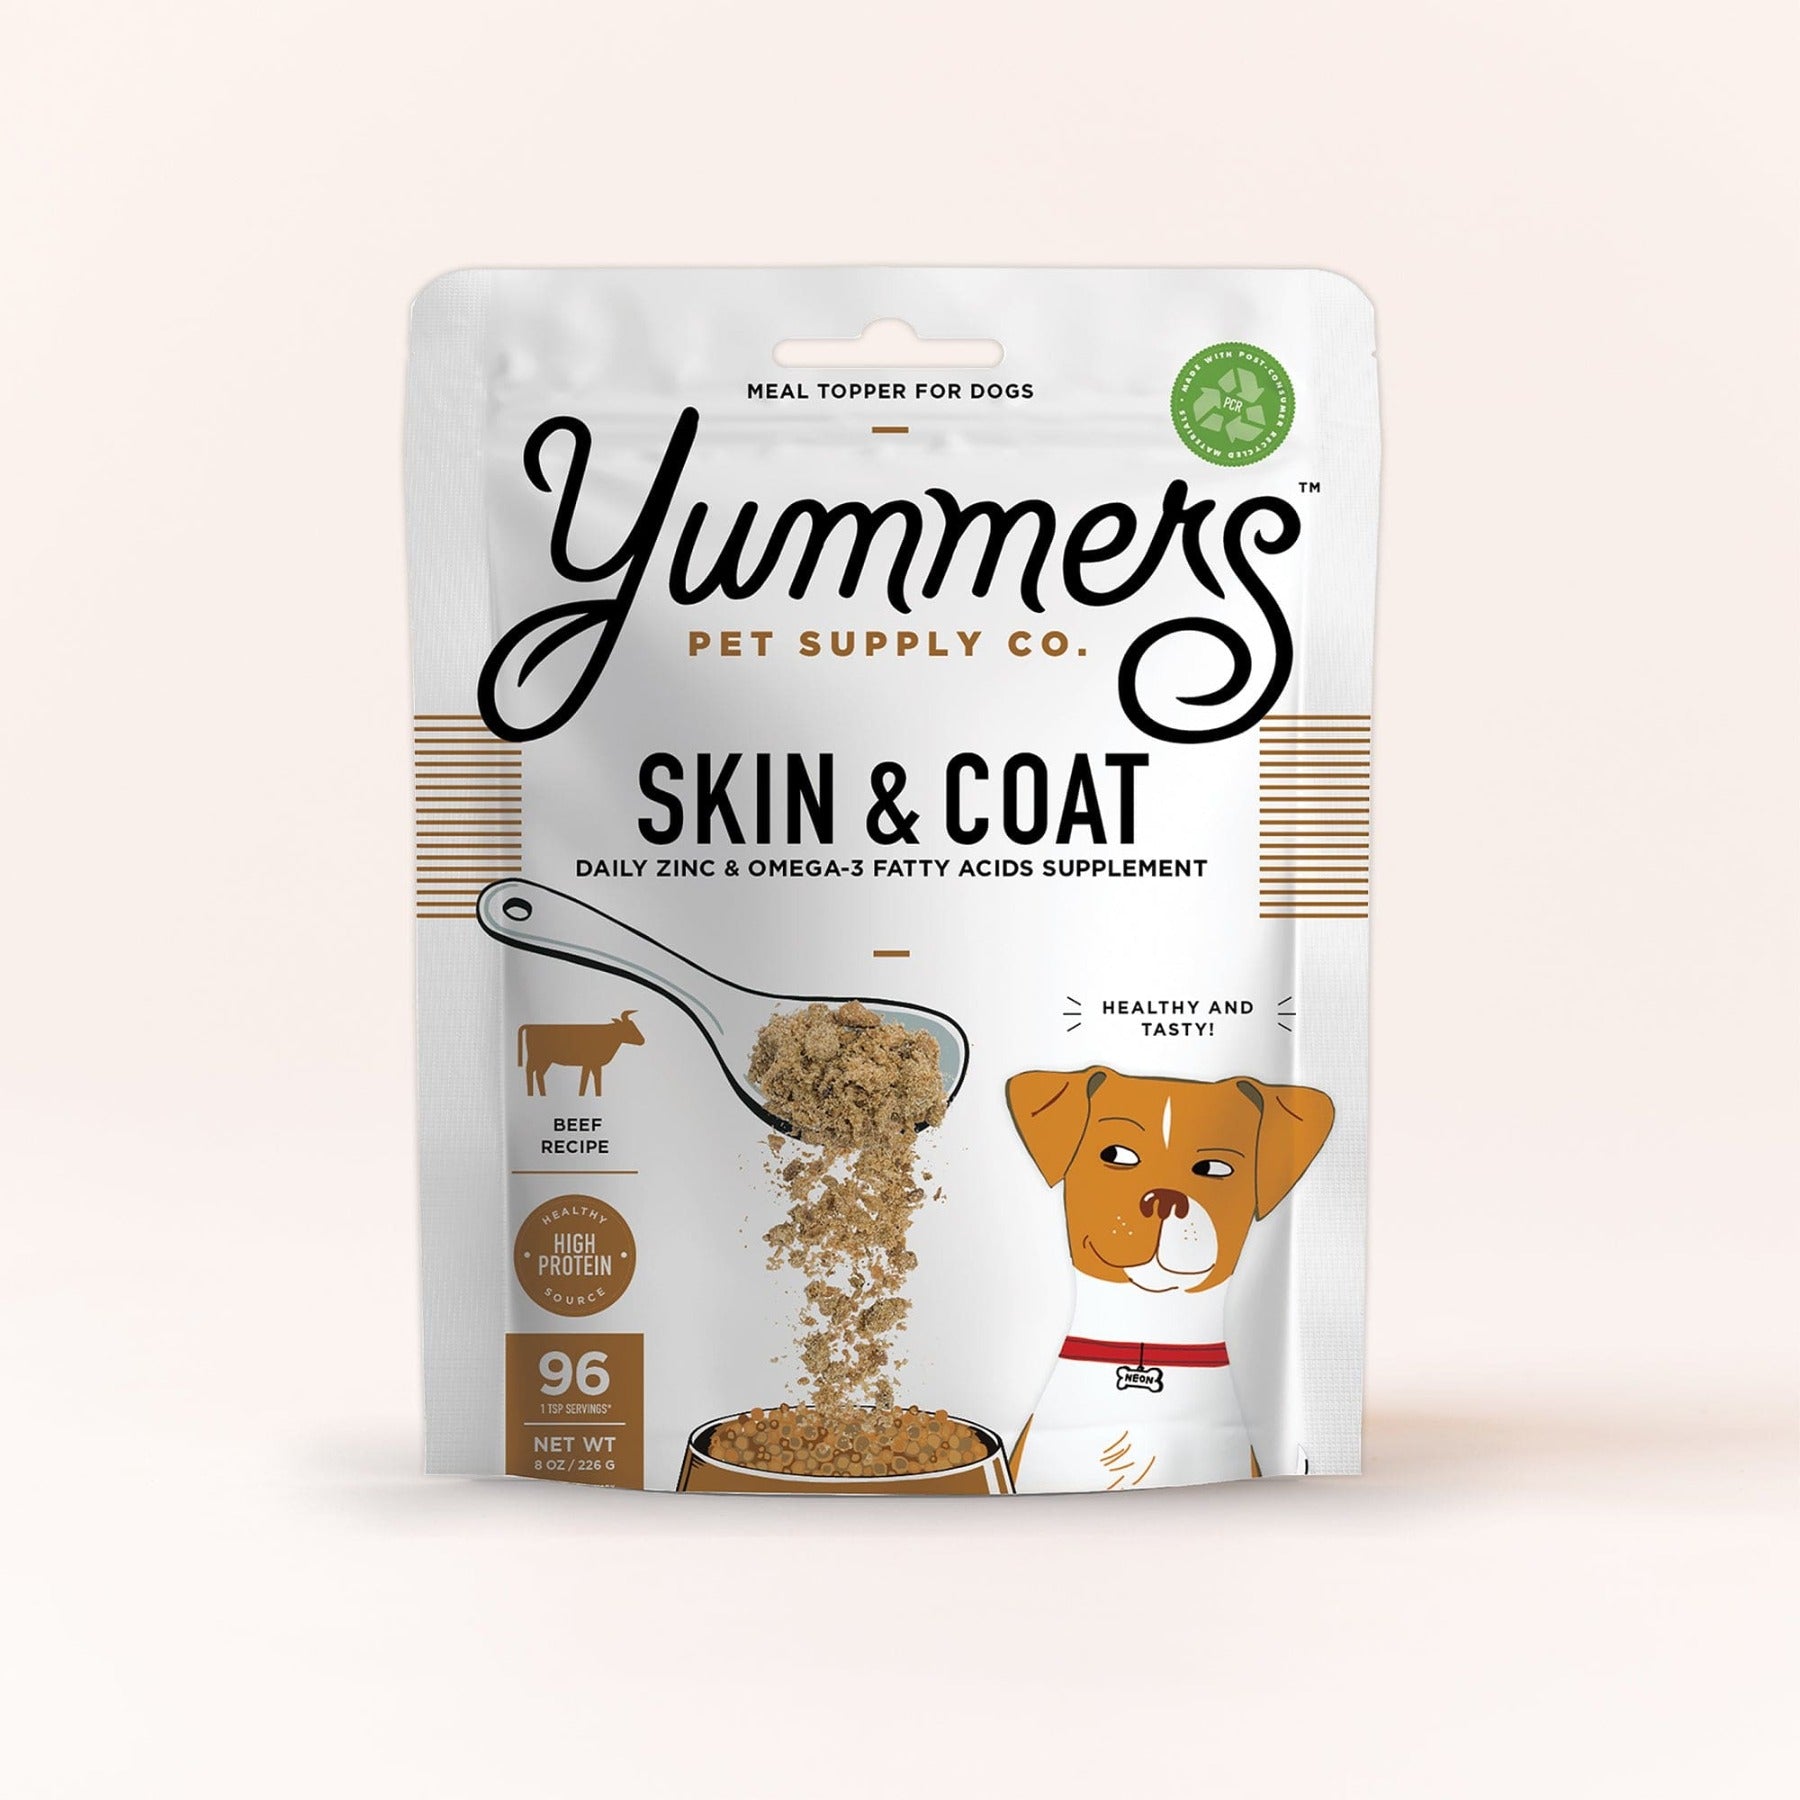 Yummers Skin & Coat Aid